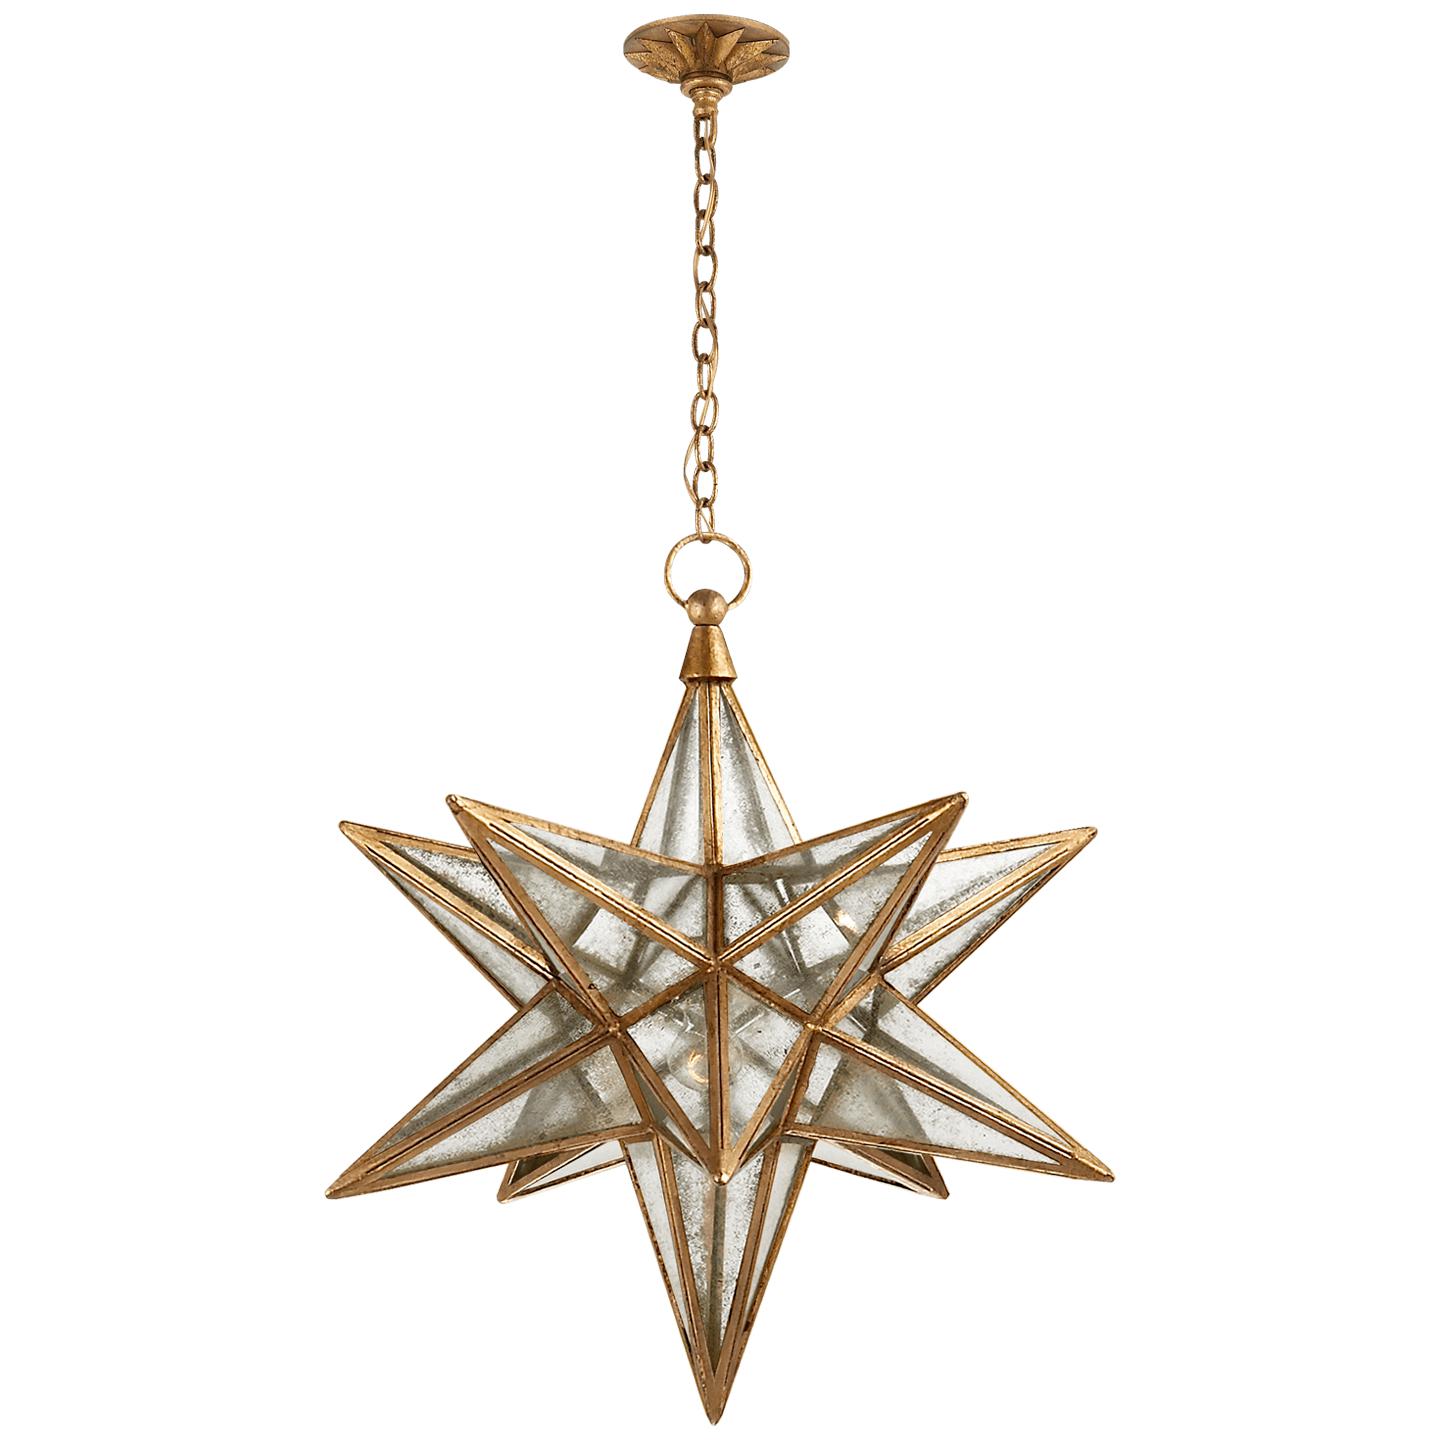 Купить Подвесной светильник Moravian Large Star Lantern в интернет-магазине roooms.ru